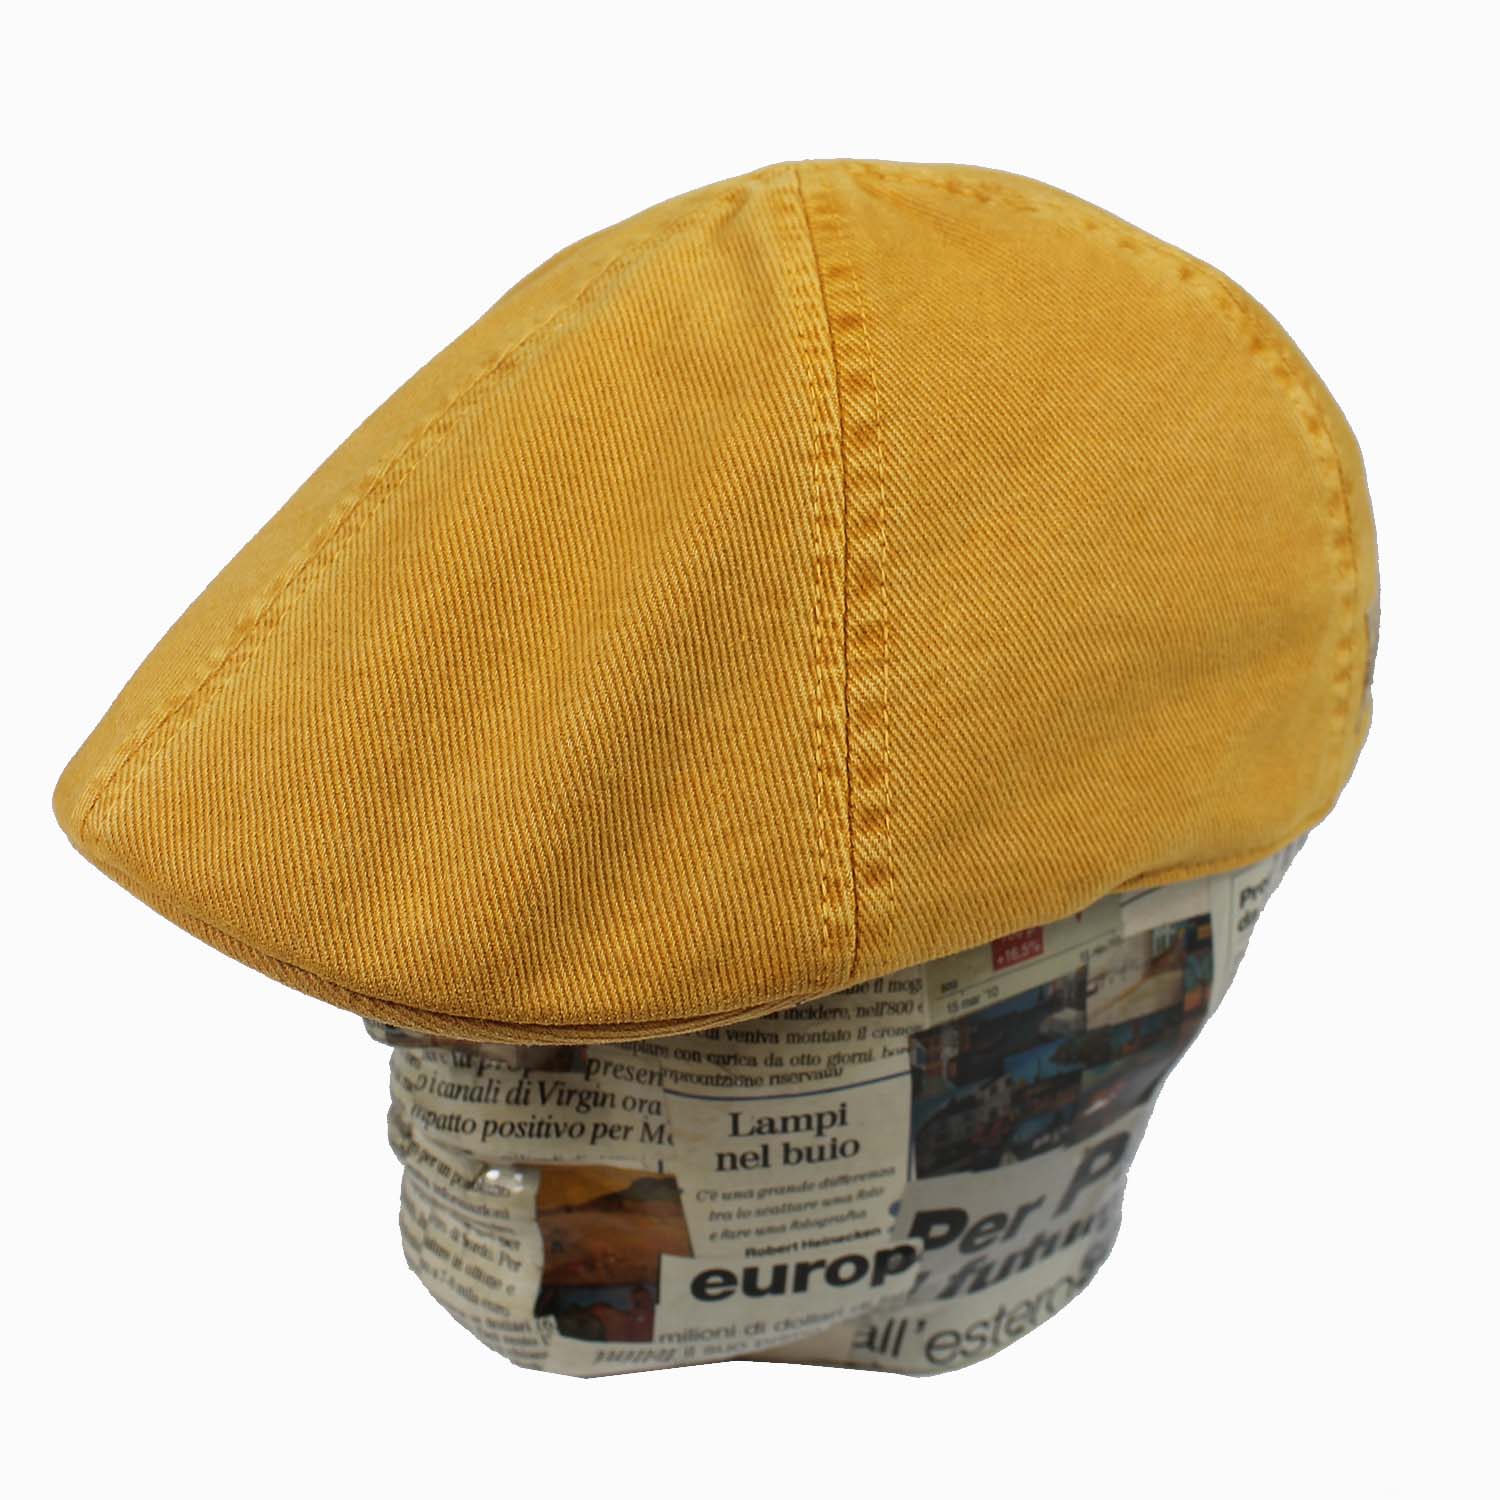 cappello-marchio-stetson-modello-duck-berretto-a-spicchi-in-tessuto-colore-giallo